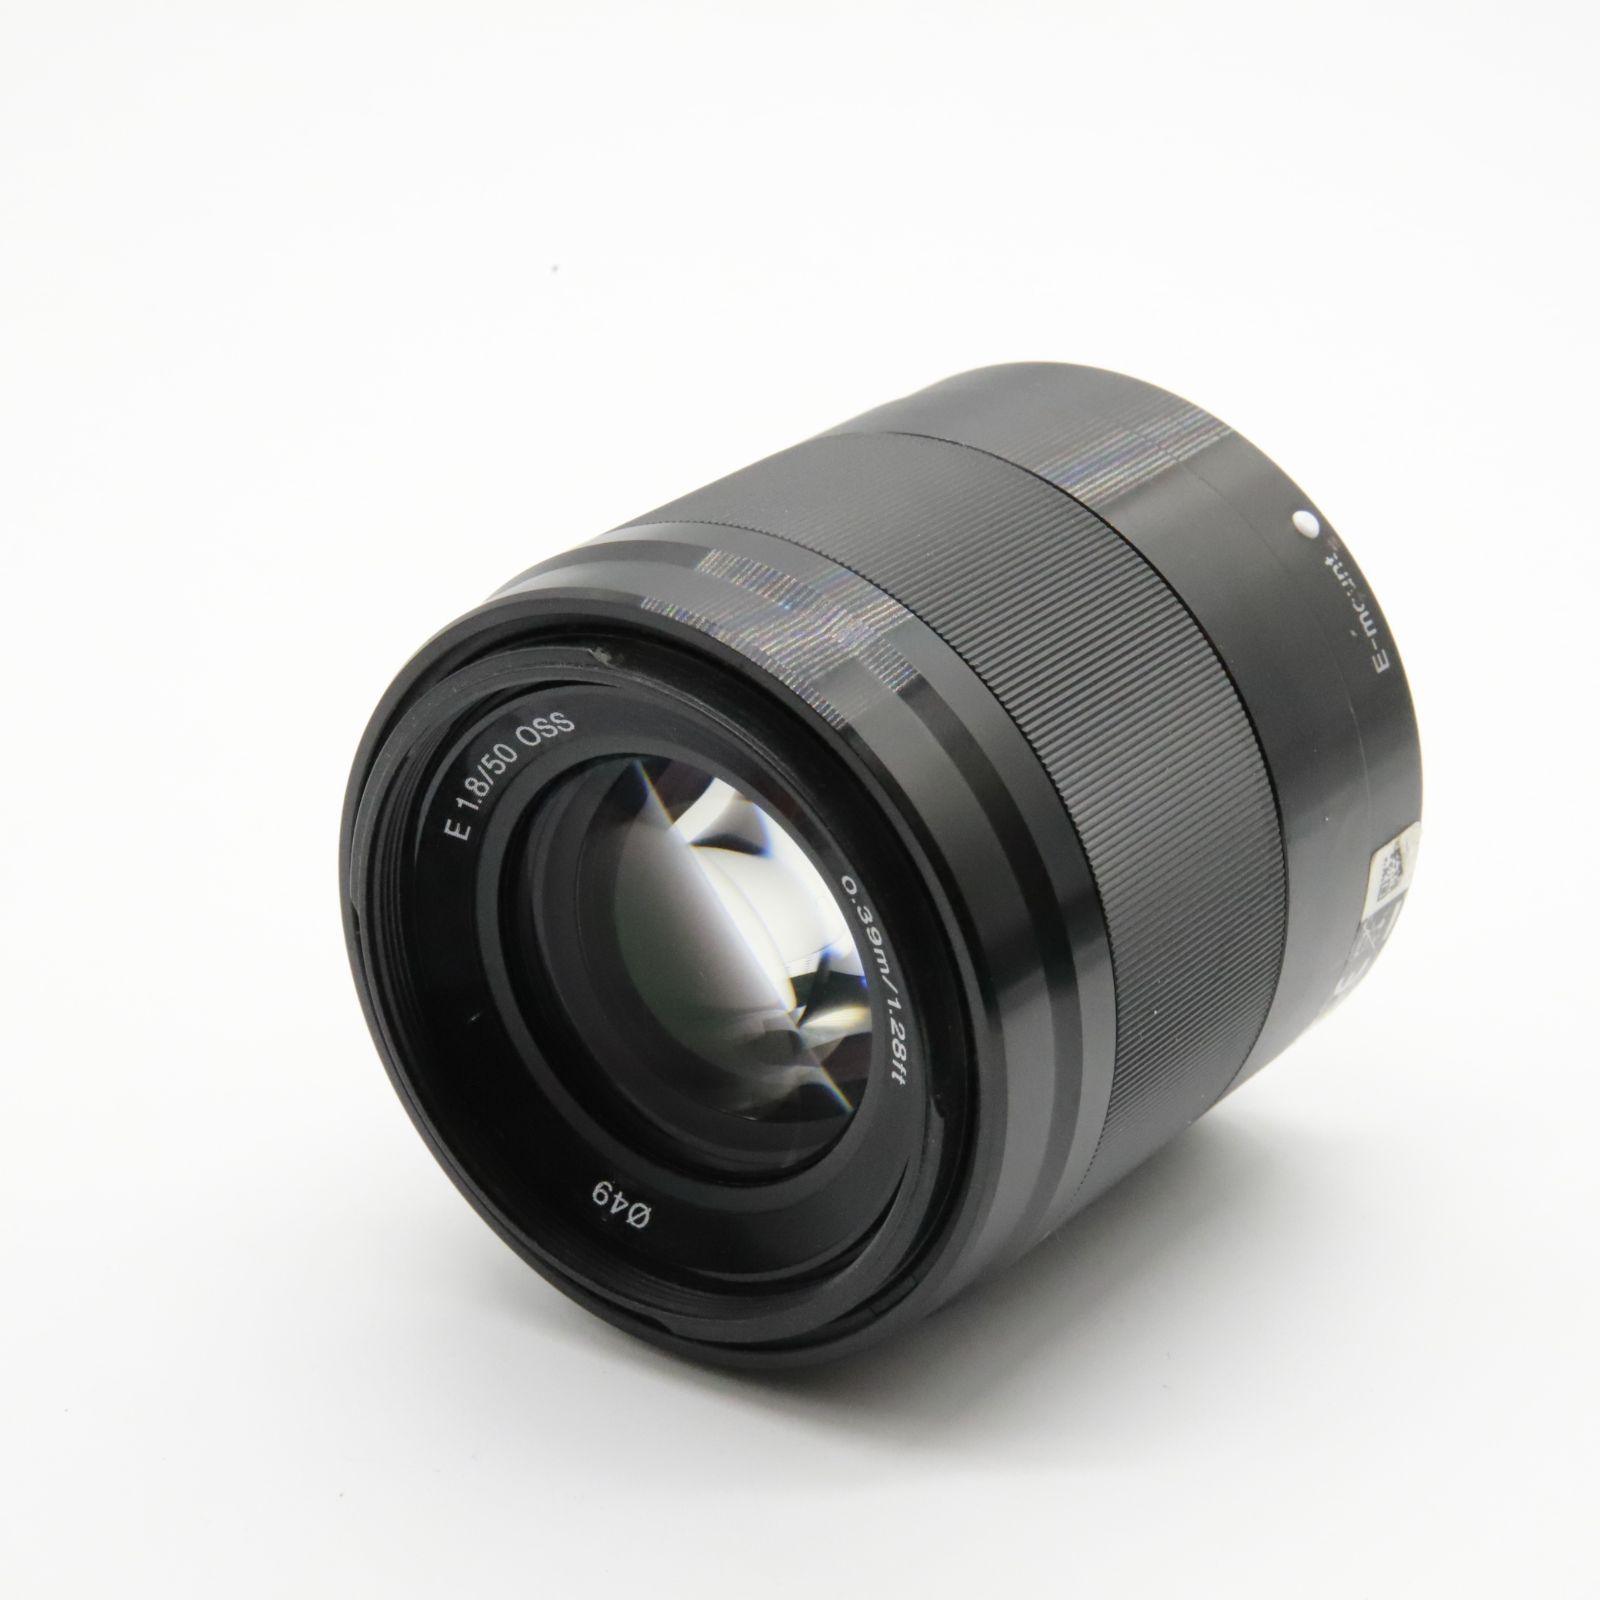 □良品□ SONY ソニー(SONY) 望遠単焦点レンズ APS-C E 50mm F1.8 OSS デジタル一眼カメラα[Eマウント]用 純正レンズ  SEL50F18 ブラック - メルカリ